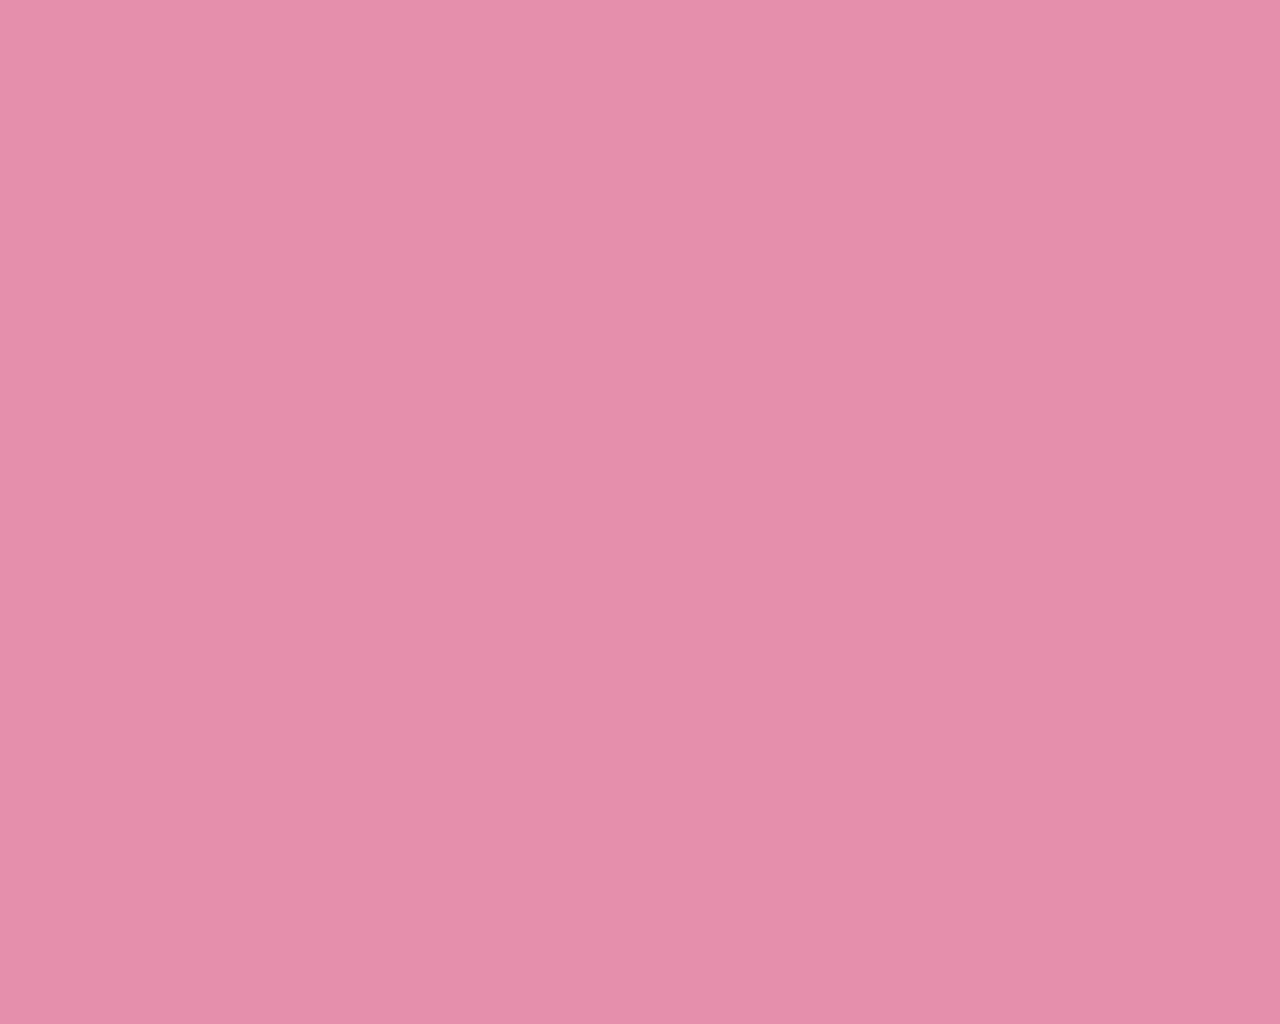 48+] Light Pink Wallpaper Images - WallpaperSafari